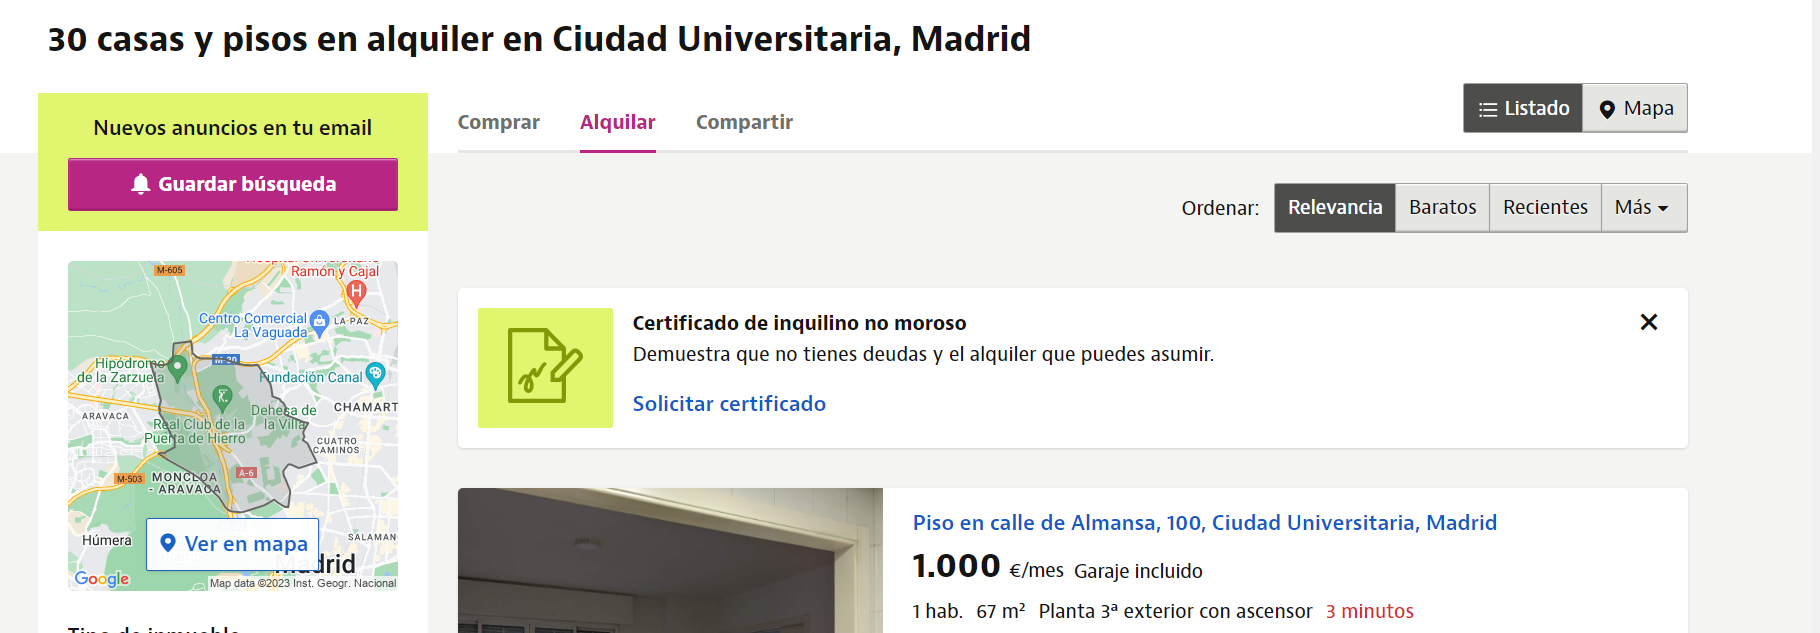 Viviendas estudiantiles, Madrid, Universidad, Estudiantes